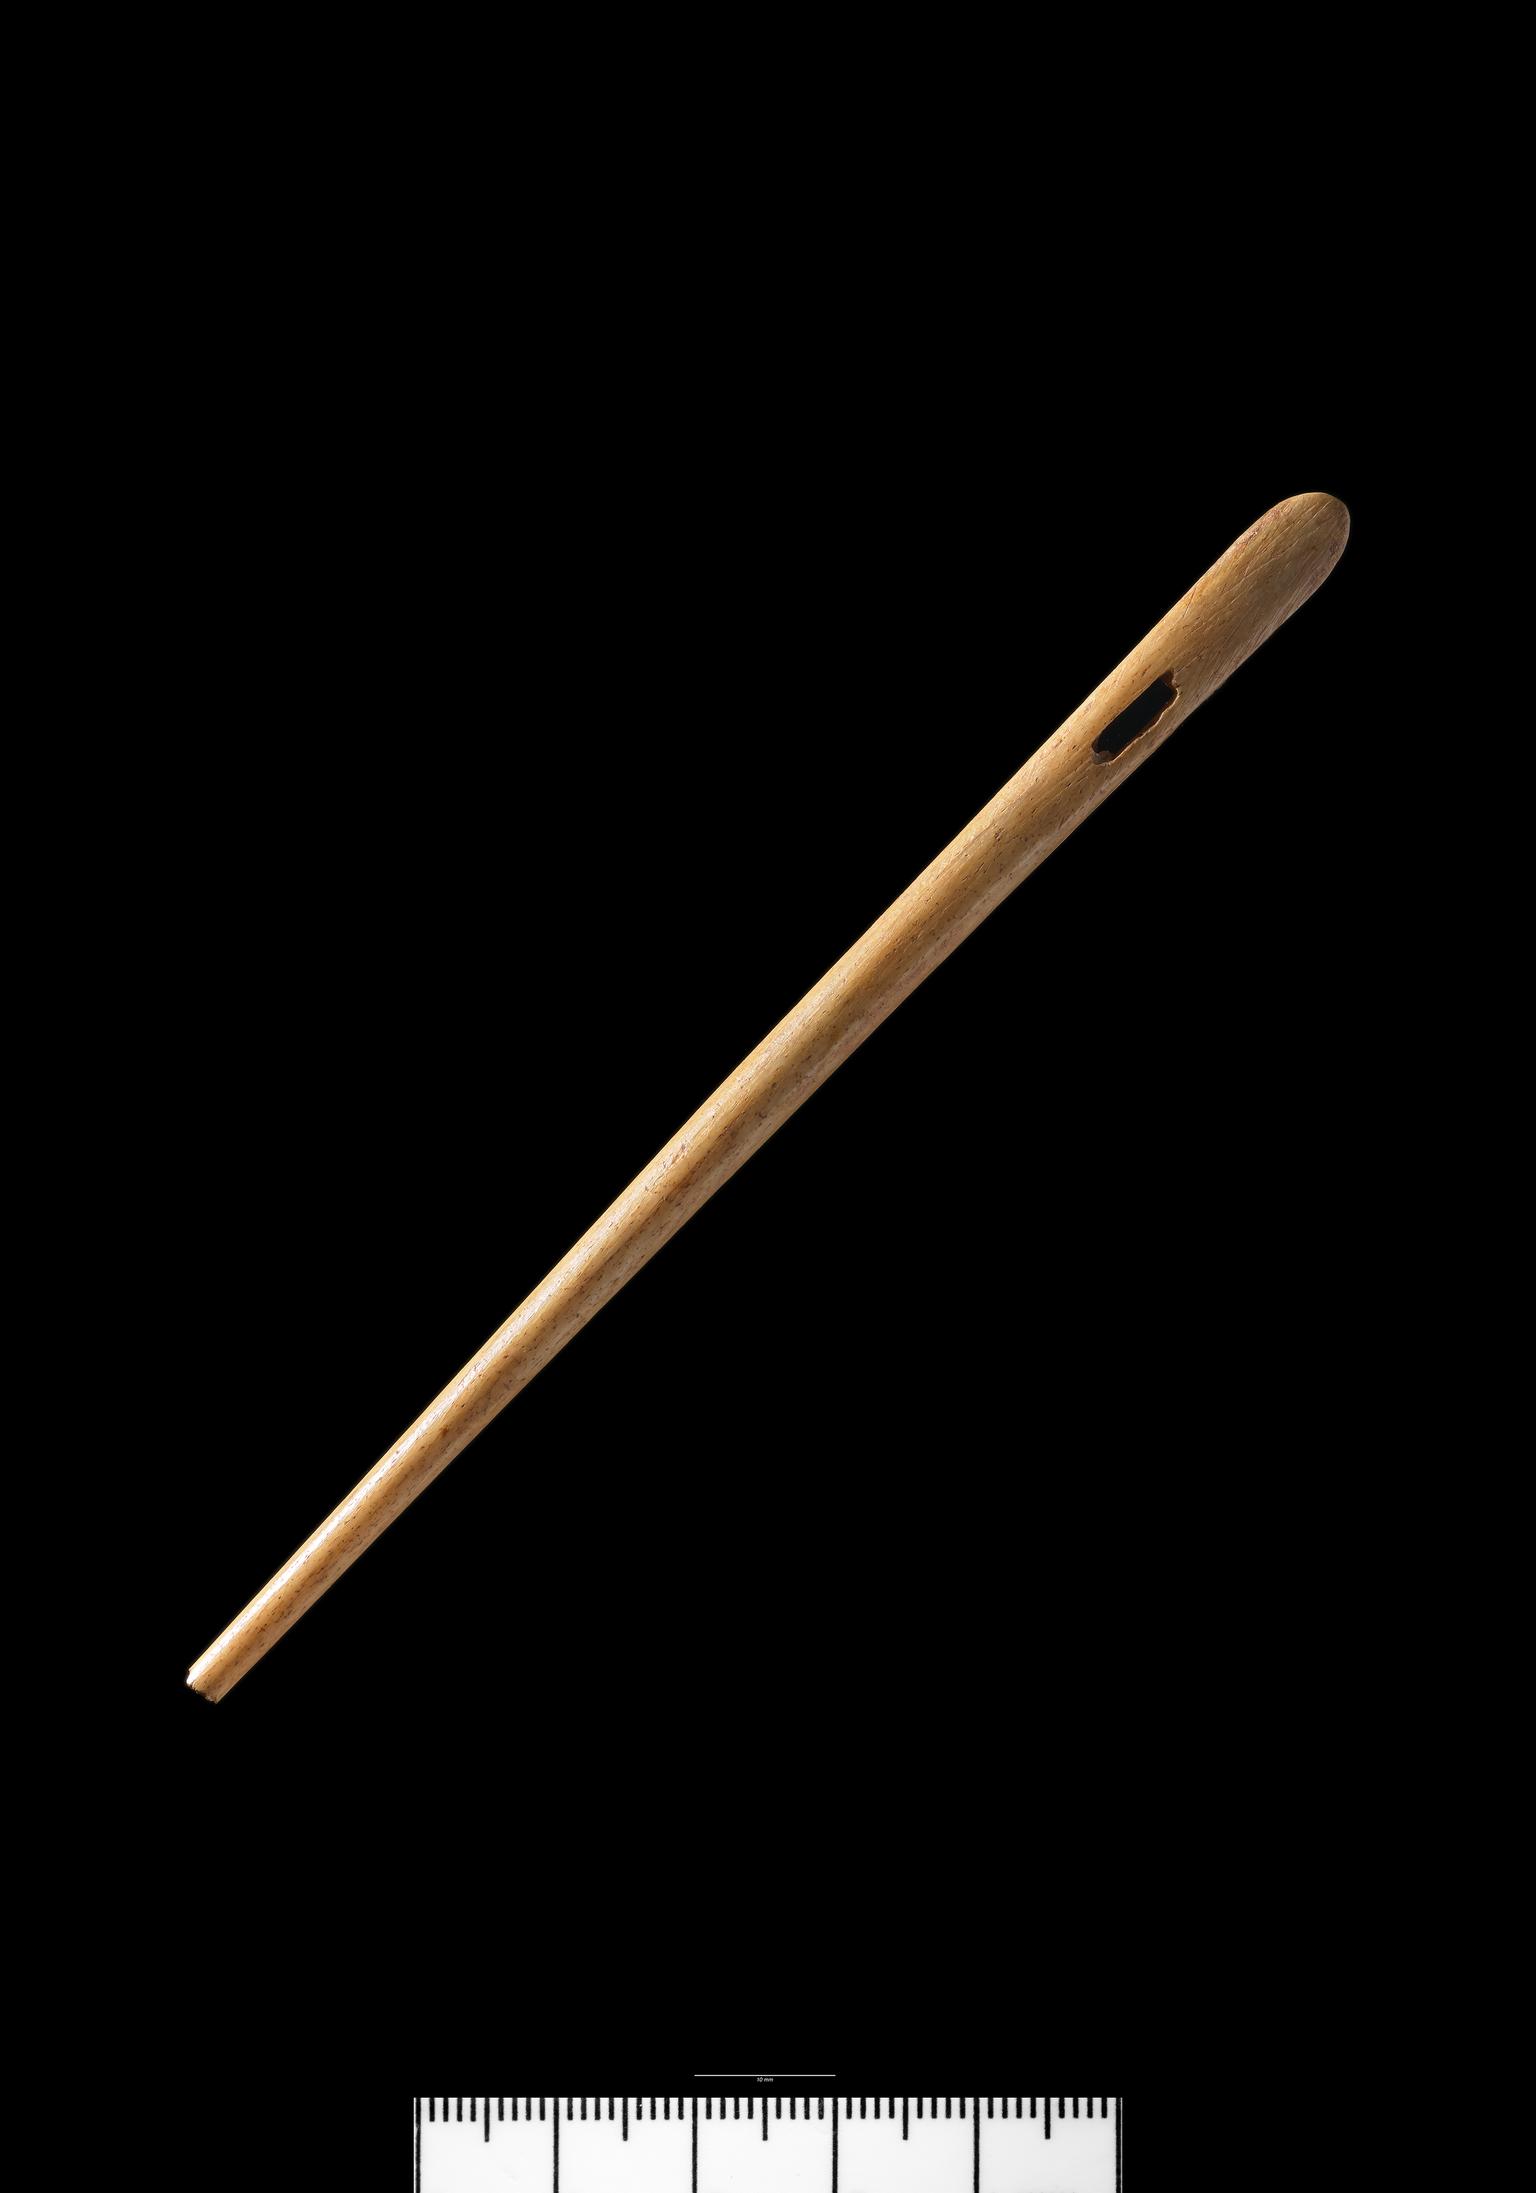 Roman bone needle